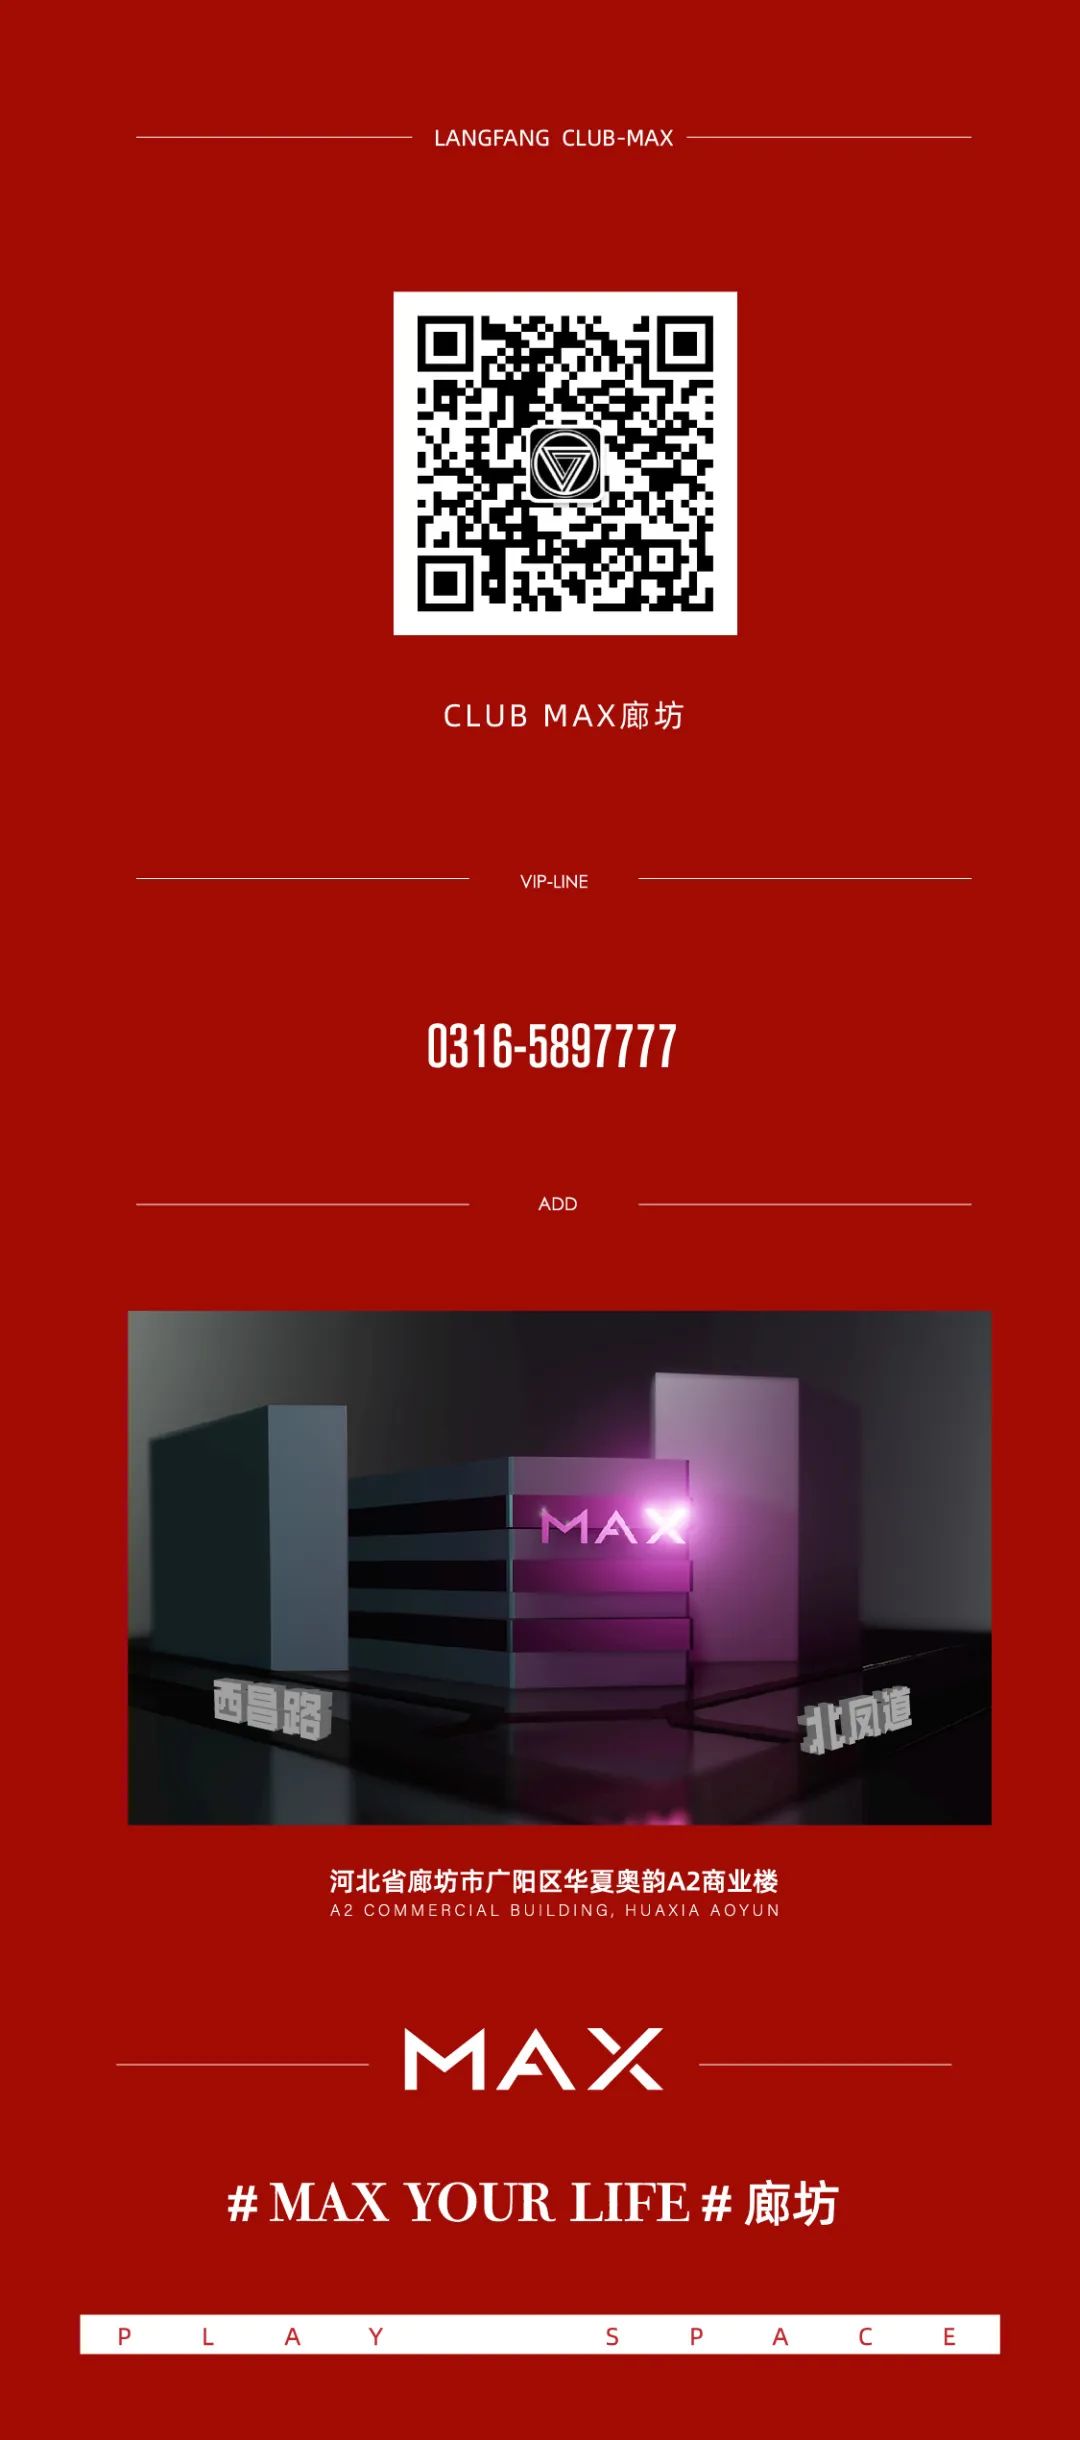 守胜争先 火力全开|8月优秀员工表彰大会-廊坊MAX酒吧/MAX CLUB